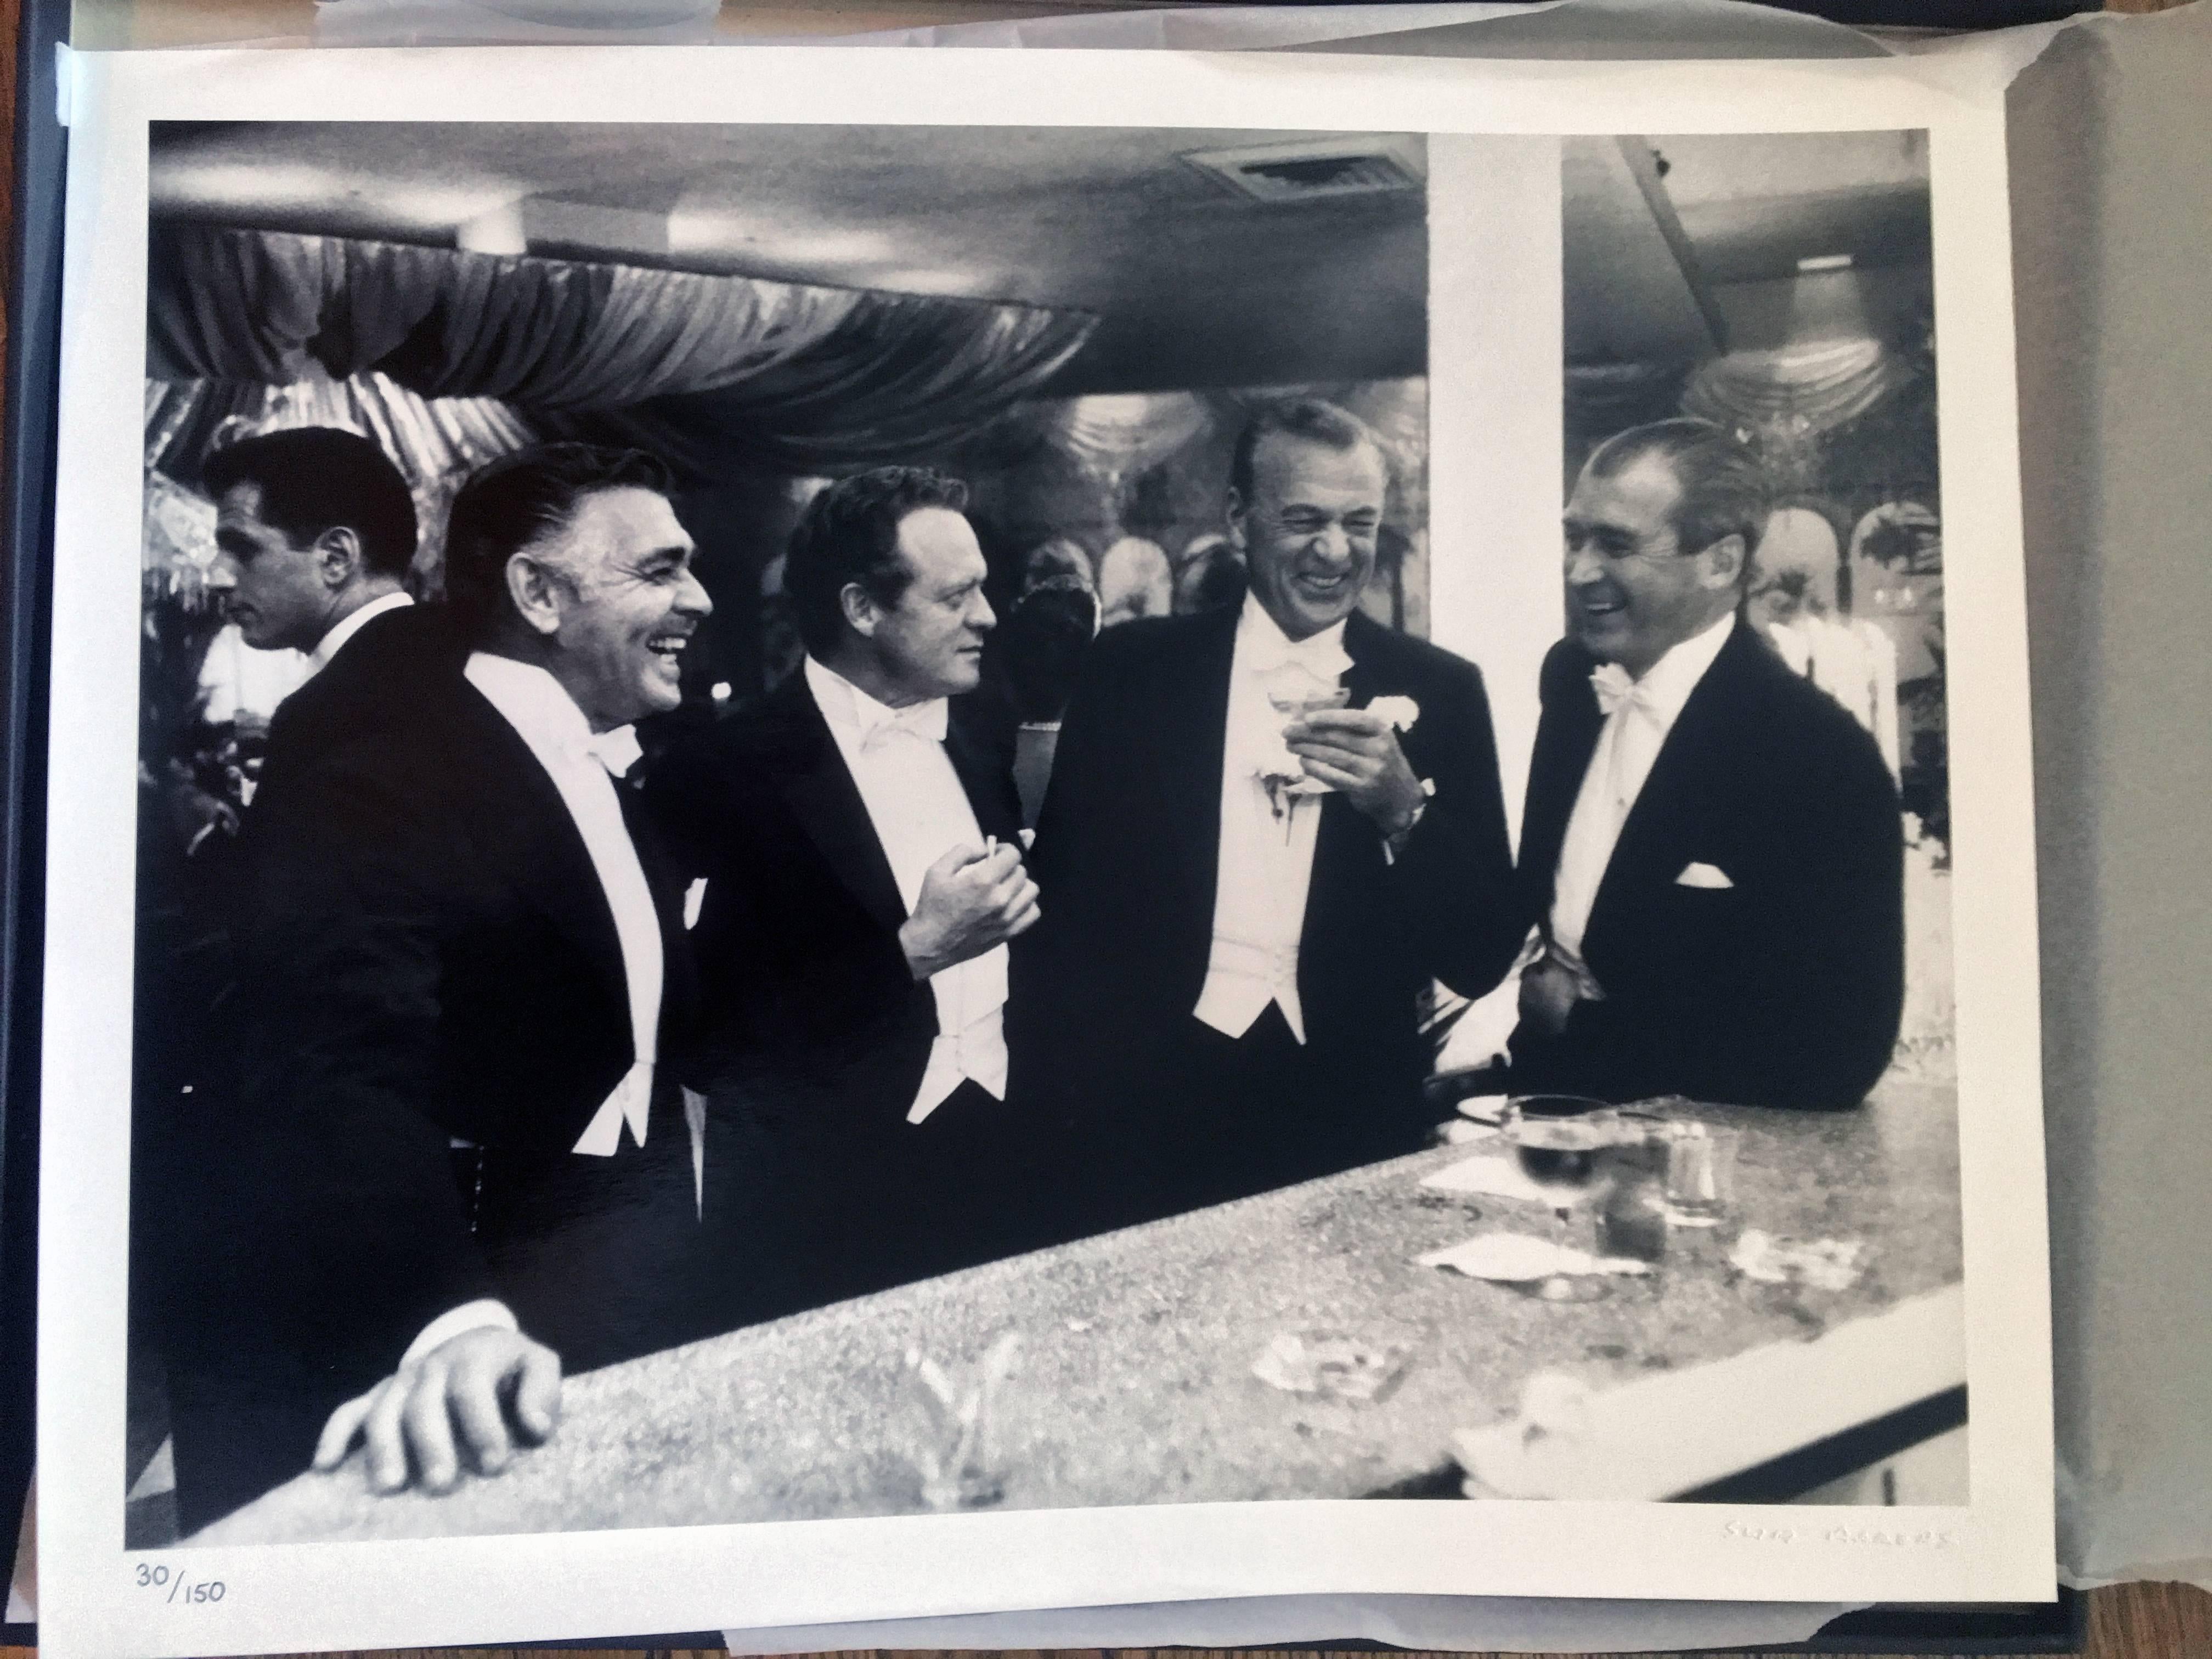 Kings of Hollywood (Klark Gable, Gary Cooper, James Stewart, Van Heflin) – Photograph von Slim Aarons